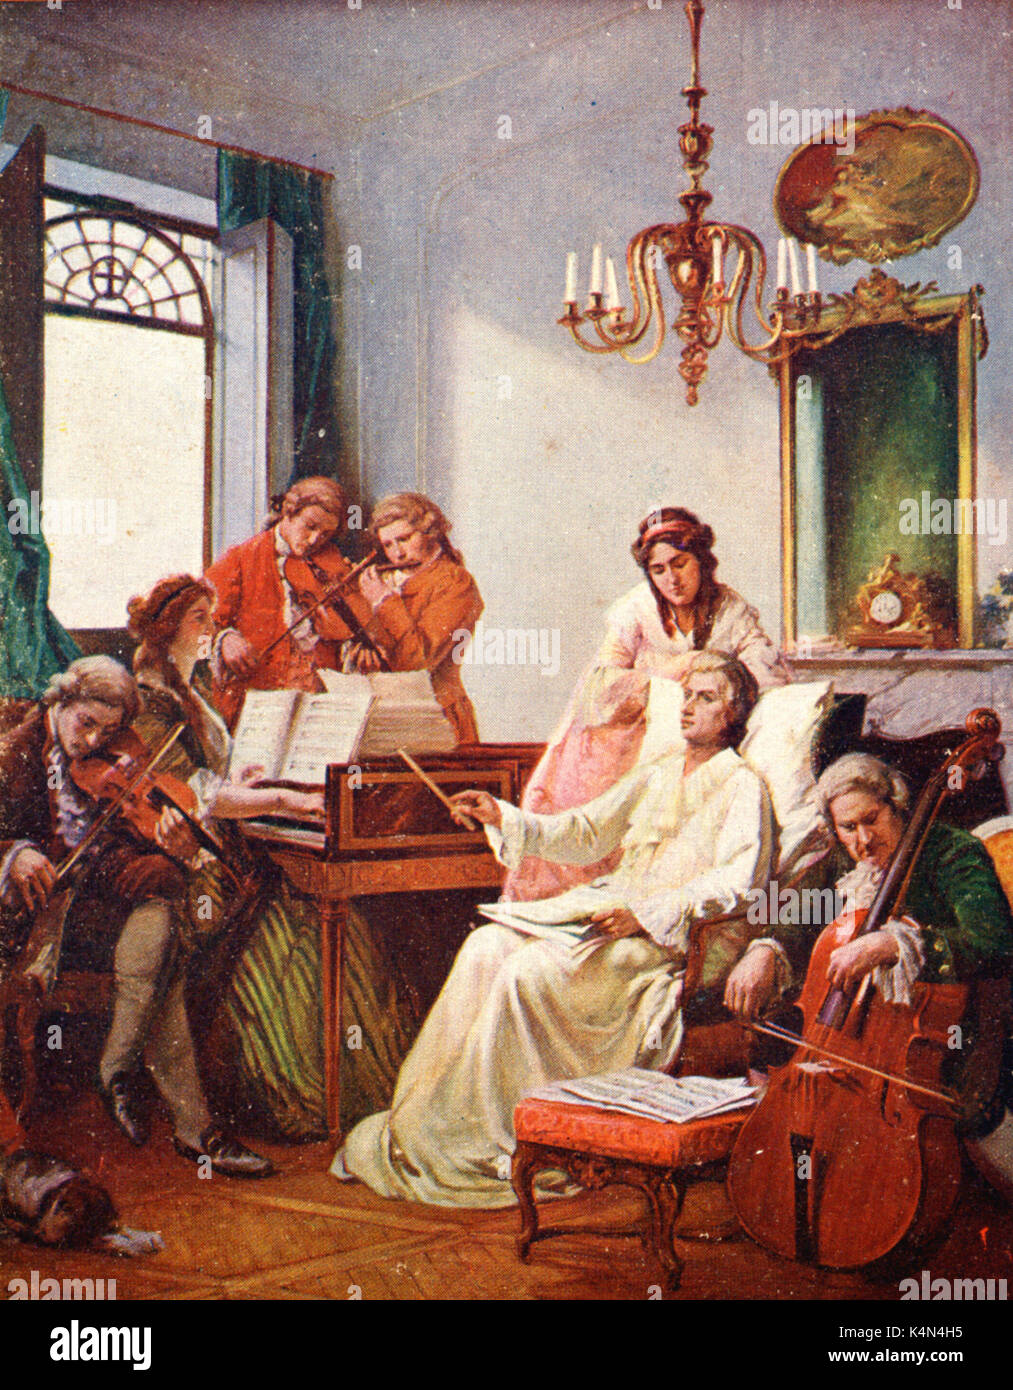 Música y significado: El Réquiem de Mozart 